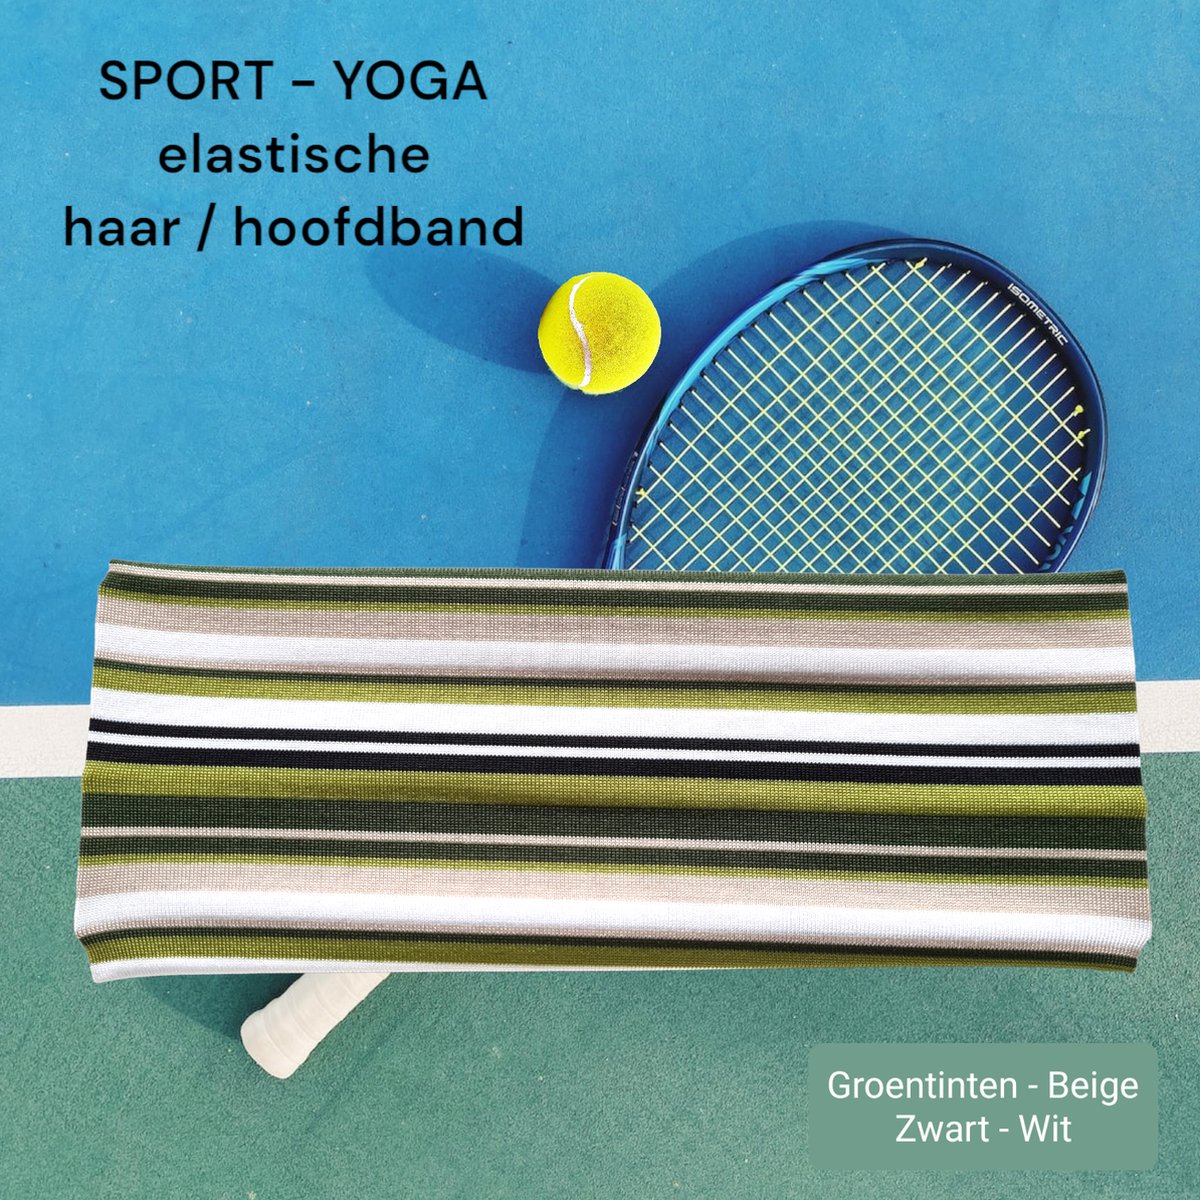 SPORT® - Haarband Hoofdband - 7,5 cm - 2 stuks - Groen tinten Beige Zwart Wit - Strepen - Casual Sport Yoga - Elastische Stof